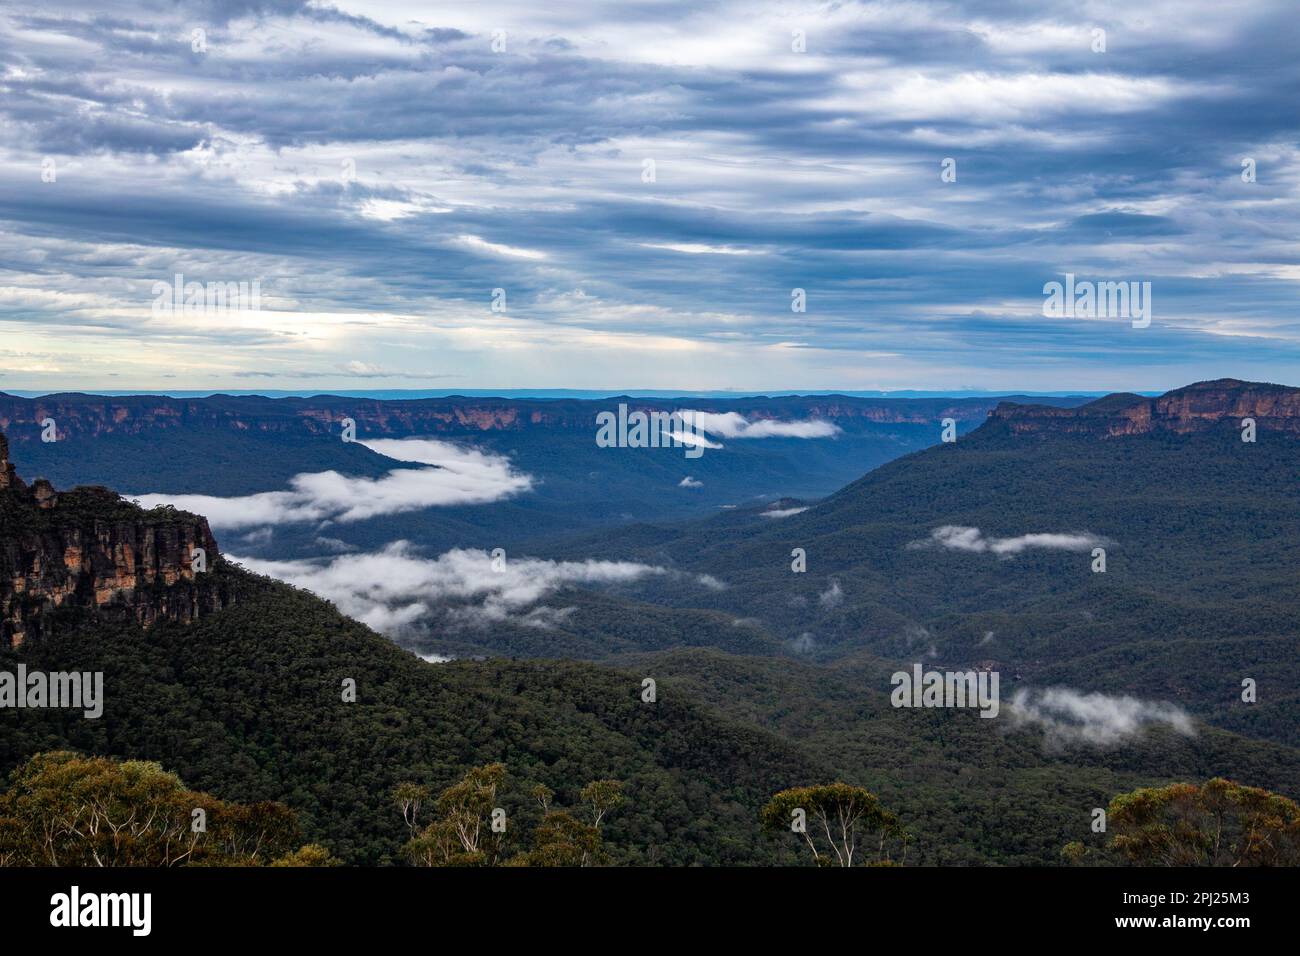 Blue Mountains à Katoomba près de Sydney, en Australie, considéré comme le Grand Canyon australien. Nuages de pluie passant au-dessus d'une chaîne de montagnes. Banque D'Images